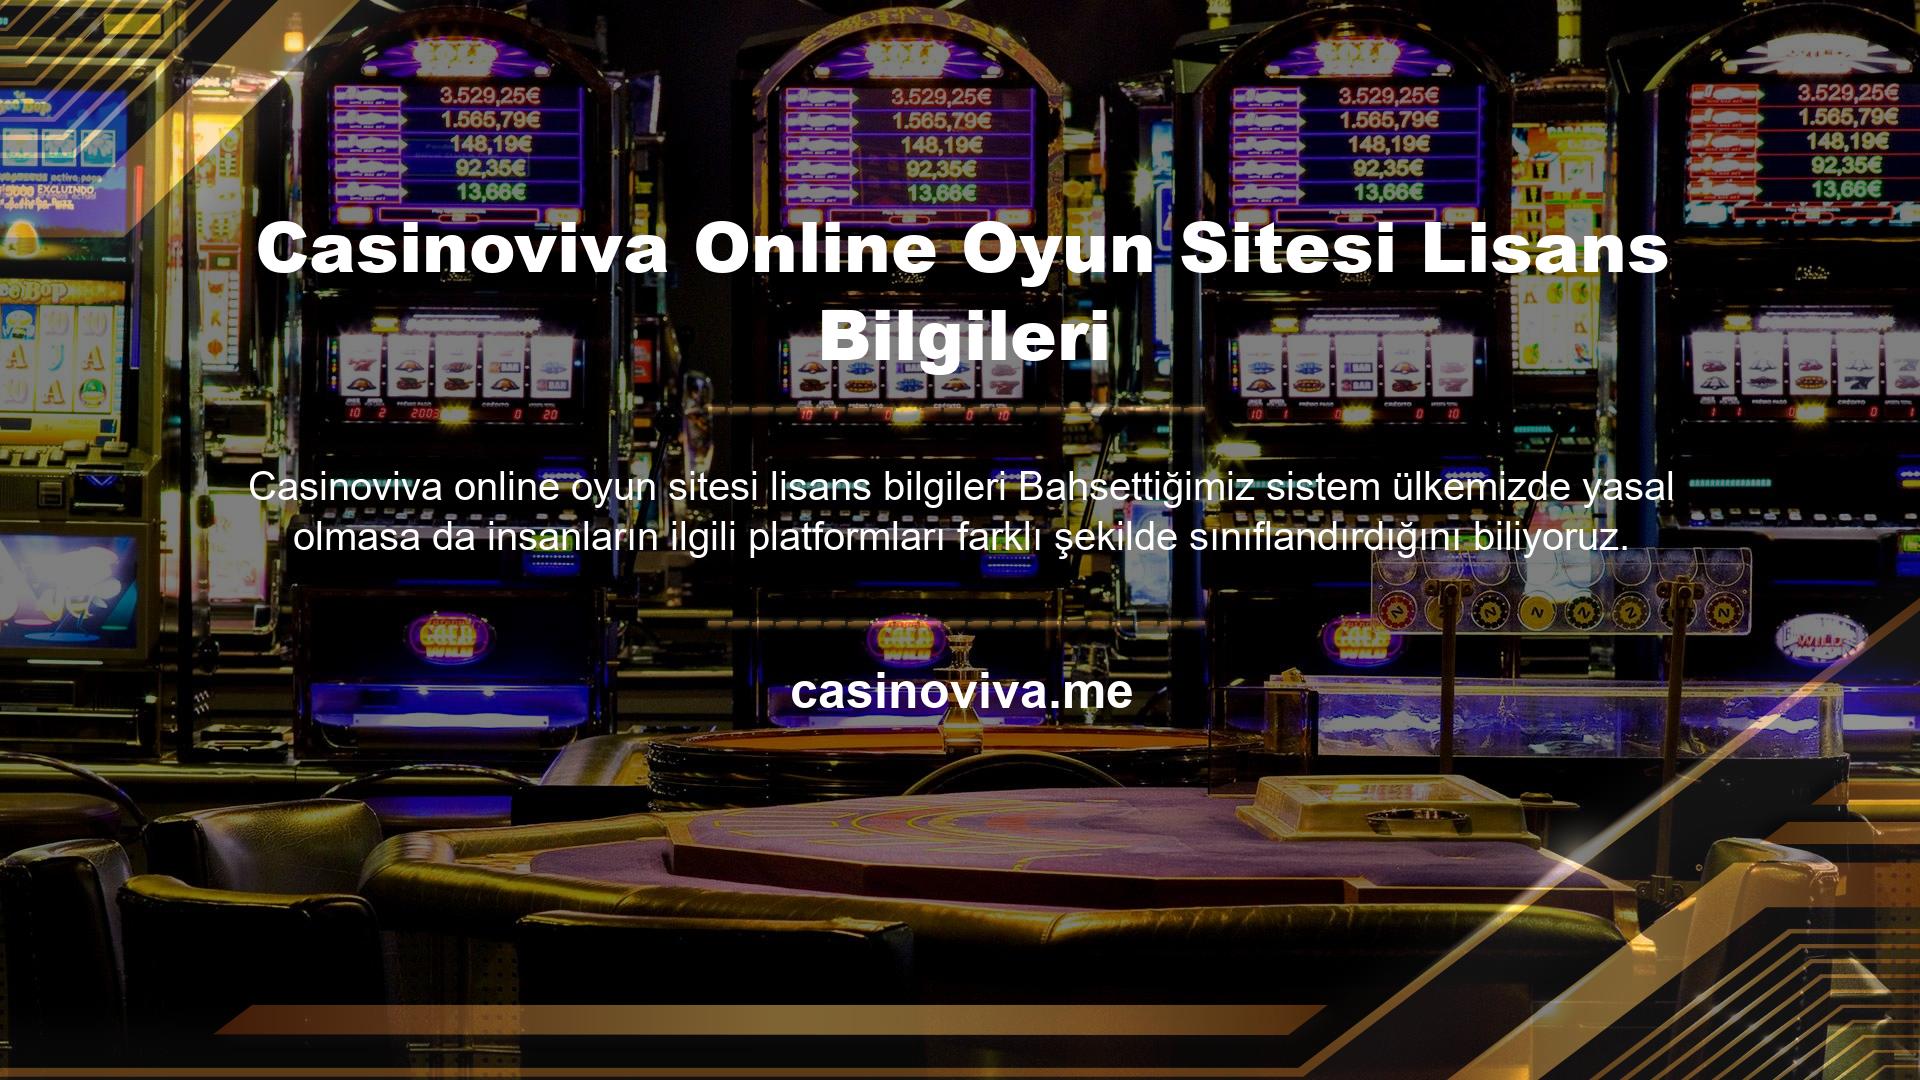 Casinoviva online oyun sitesi lisans bilgileri